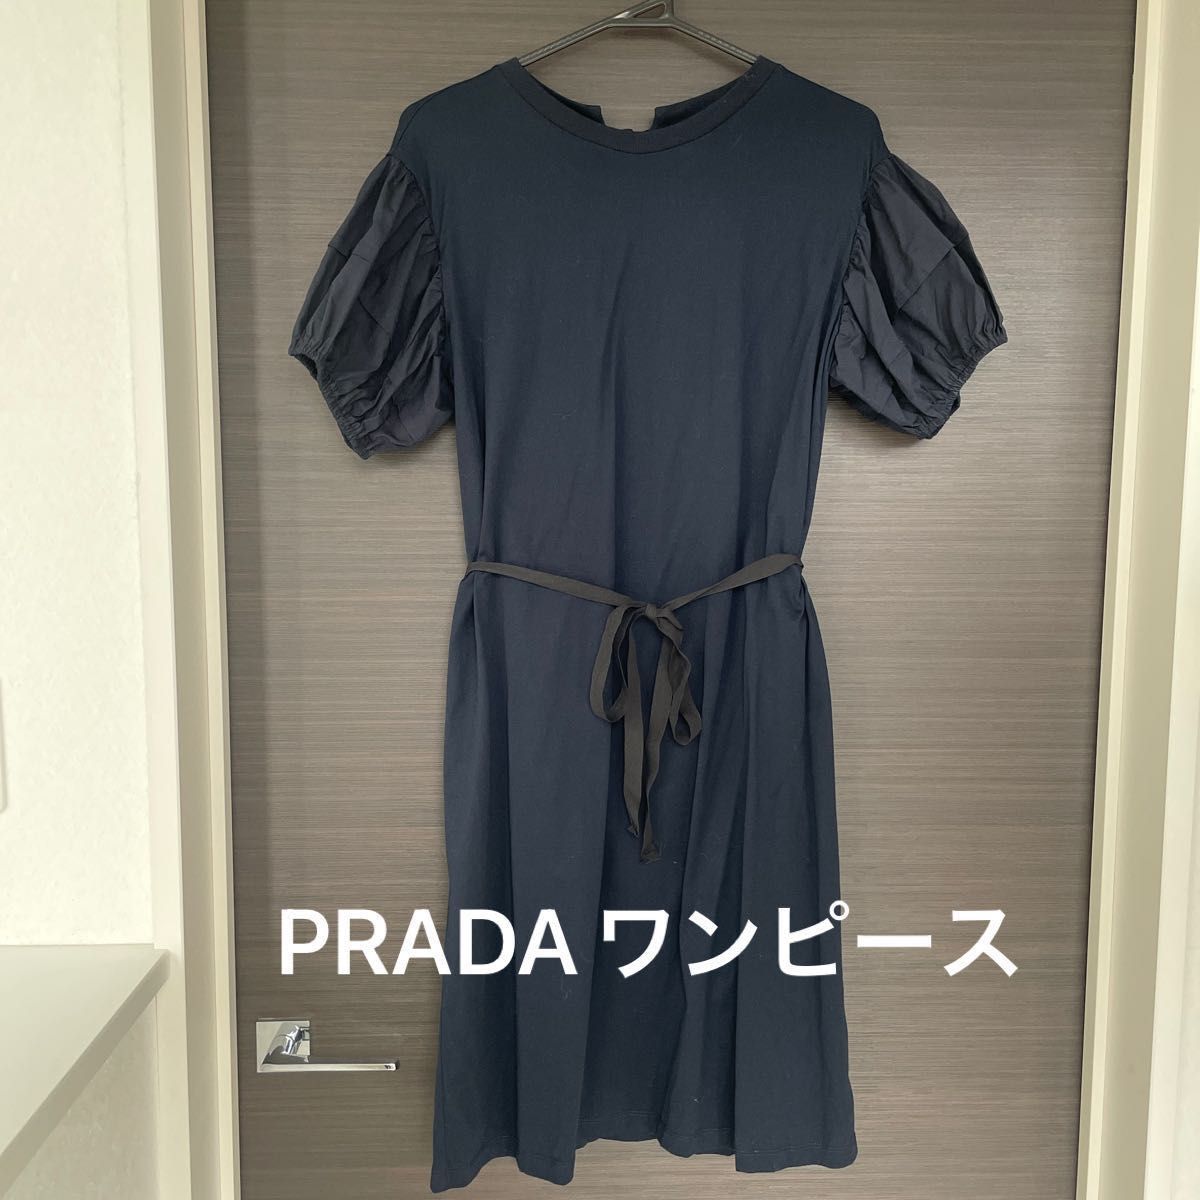 プラダ PRADA ワンピース フォーマル オケージョン リボン バルーン袖